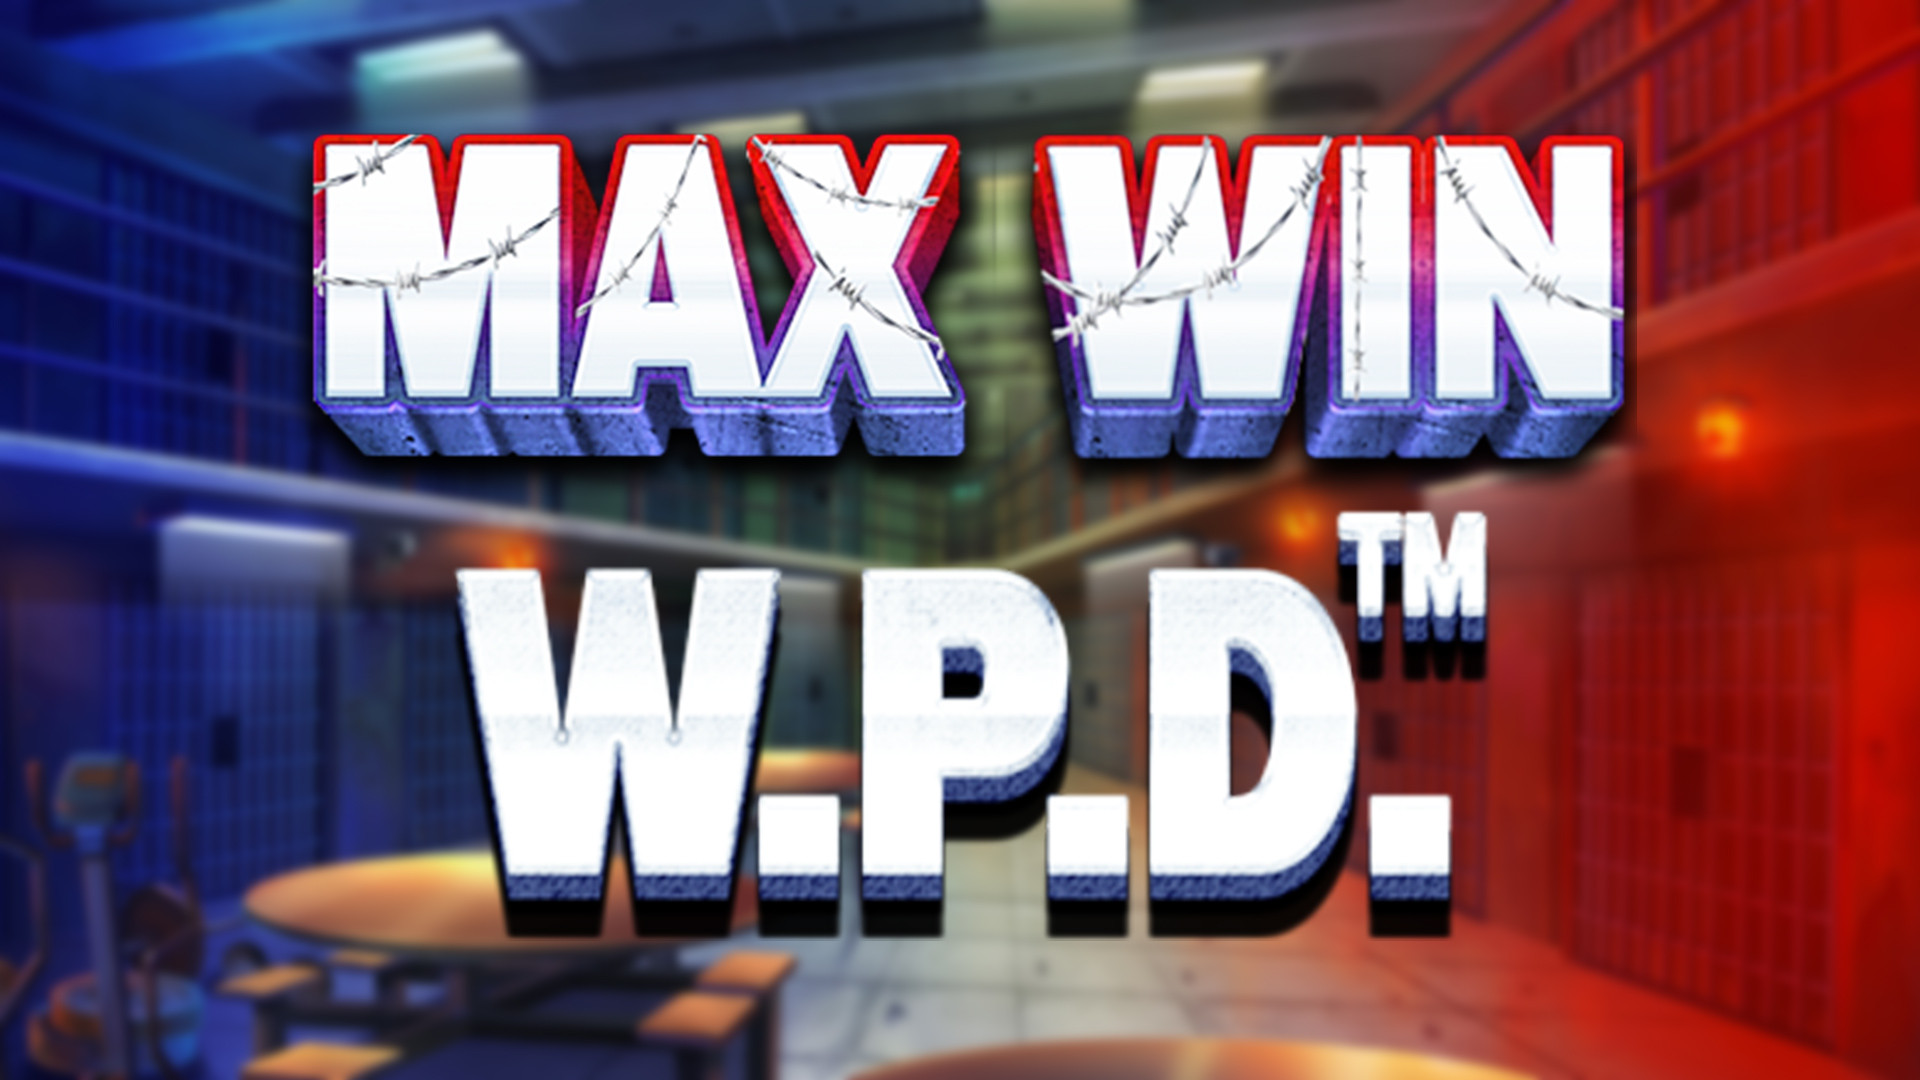 MAX WIN W.P.D